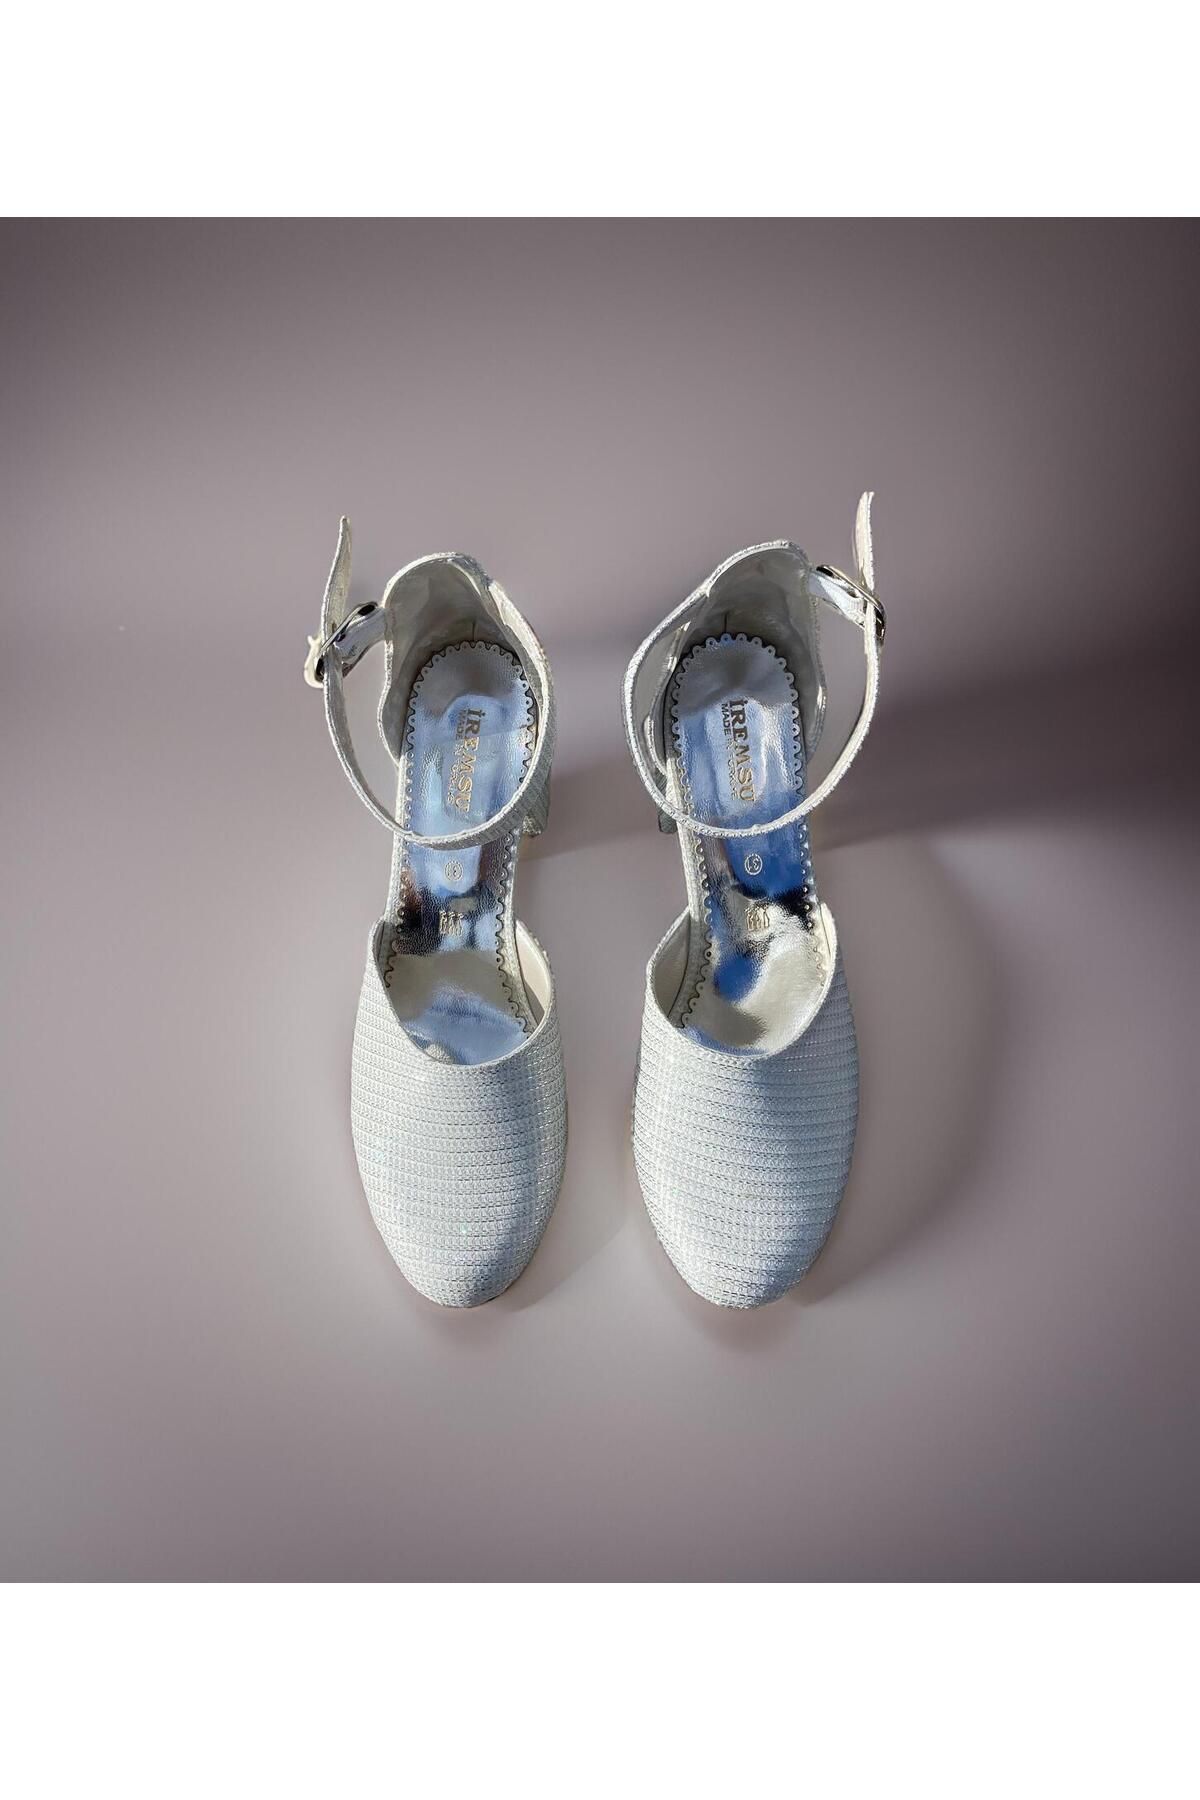 Pabrik Sedef Simli Kız Çocuk Topuklu Ayakkabı